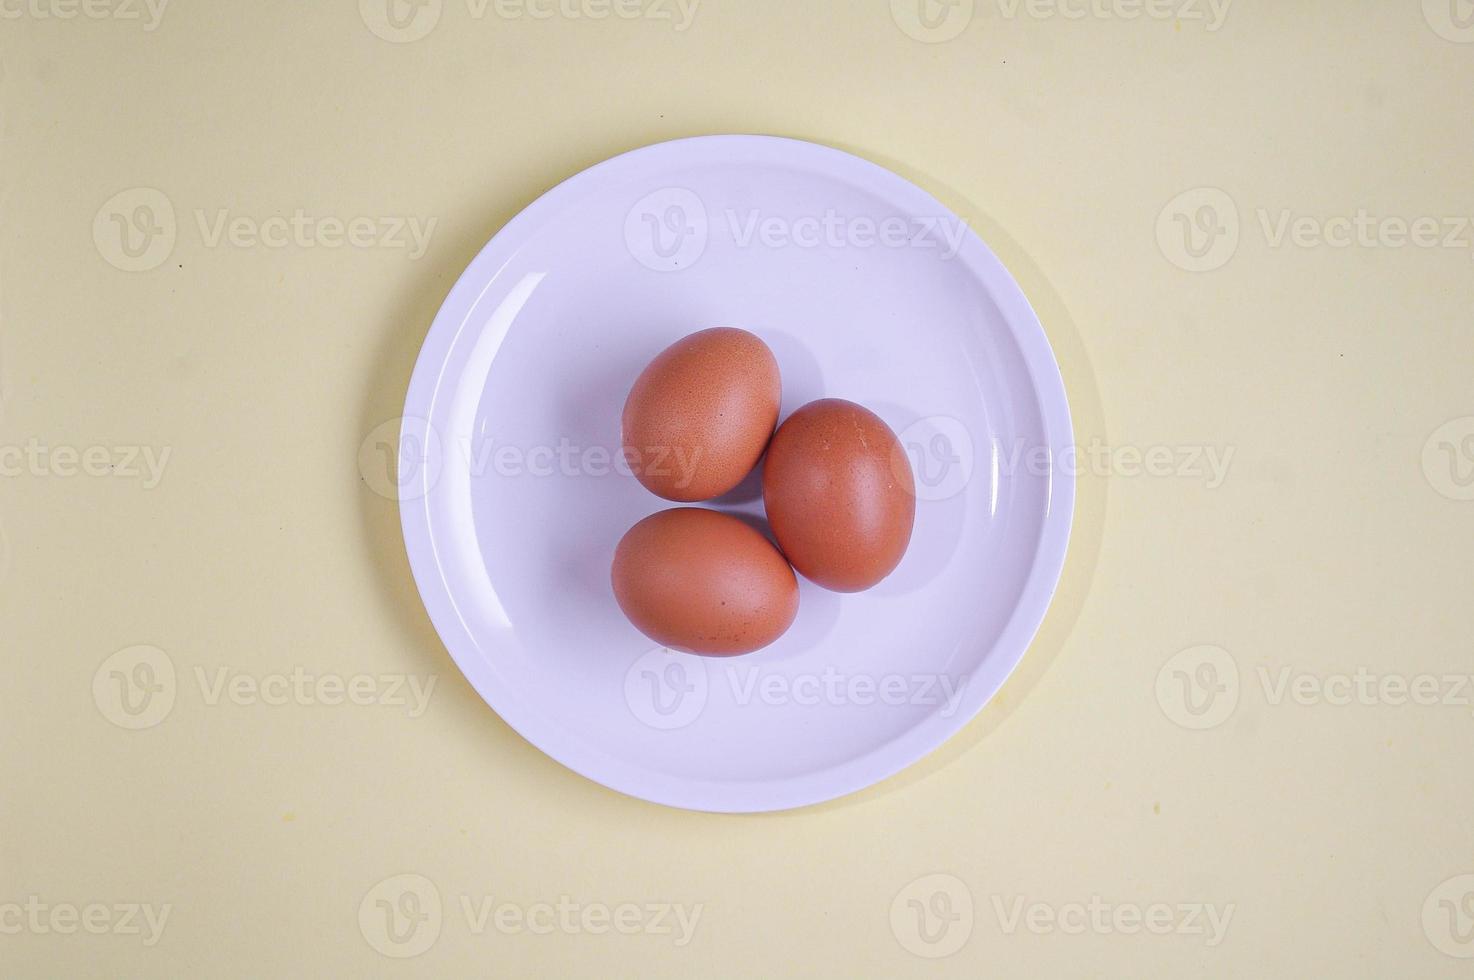 huevos marrones en plato blanco fondo amarillo suave. concepto de comida saludable, vista superior o fotografía flatlay foto